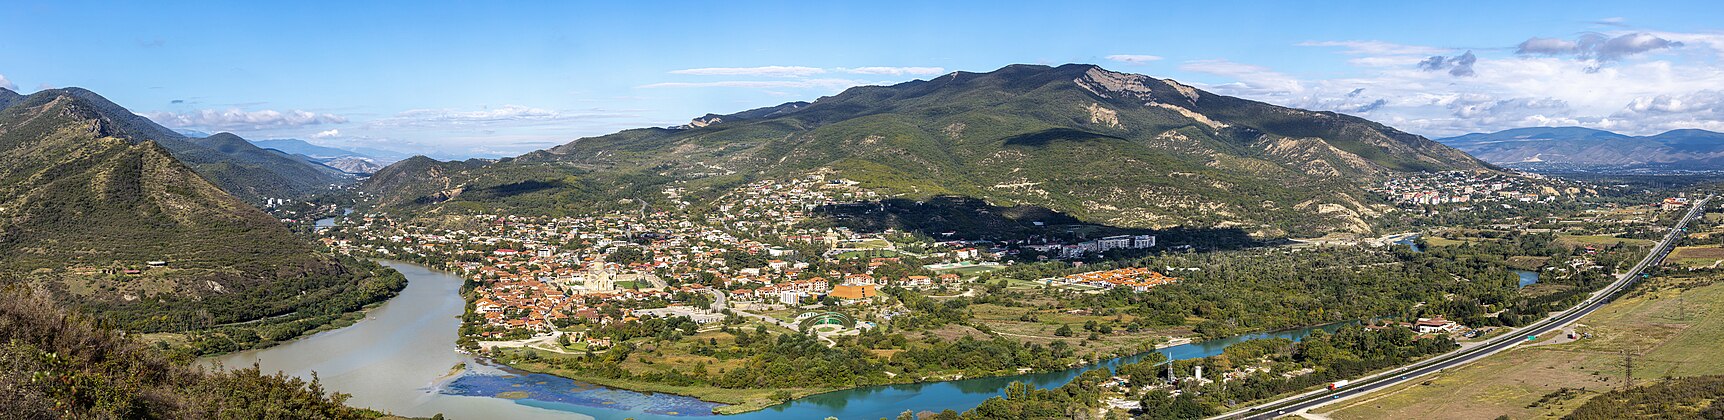 Panoramic view of Mtskheta city